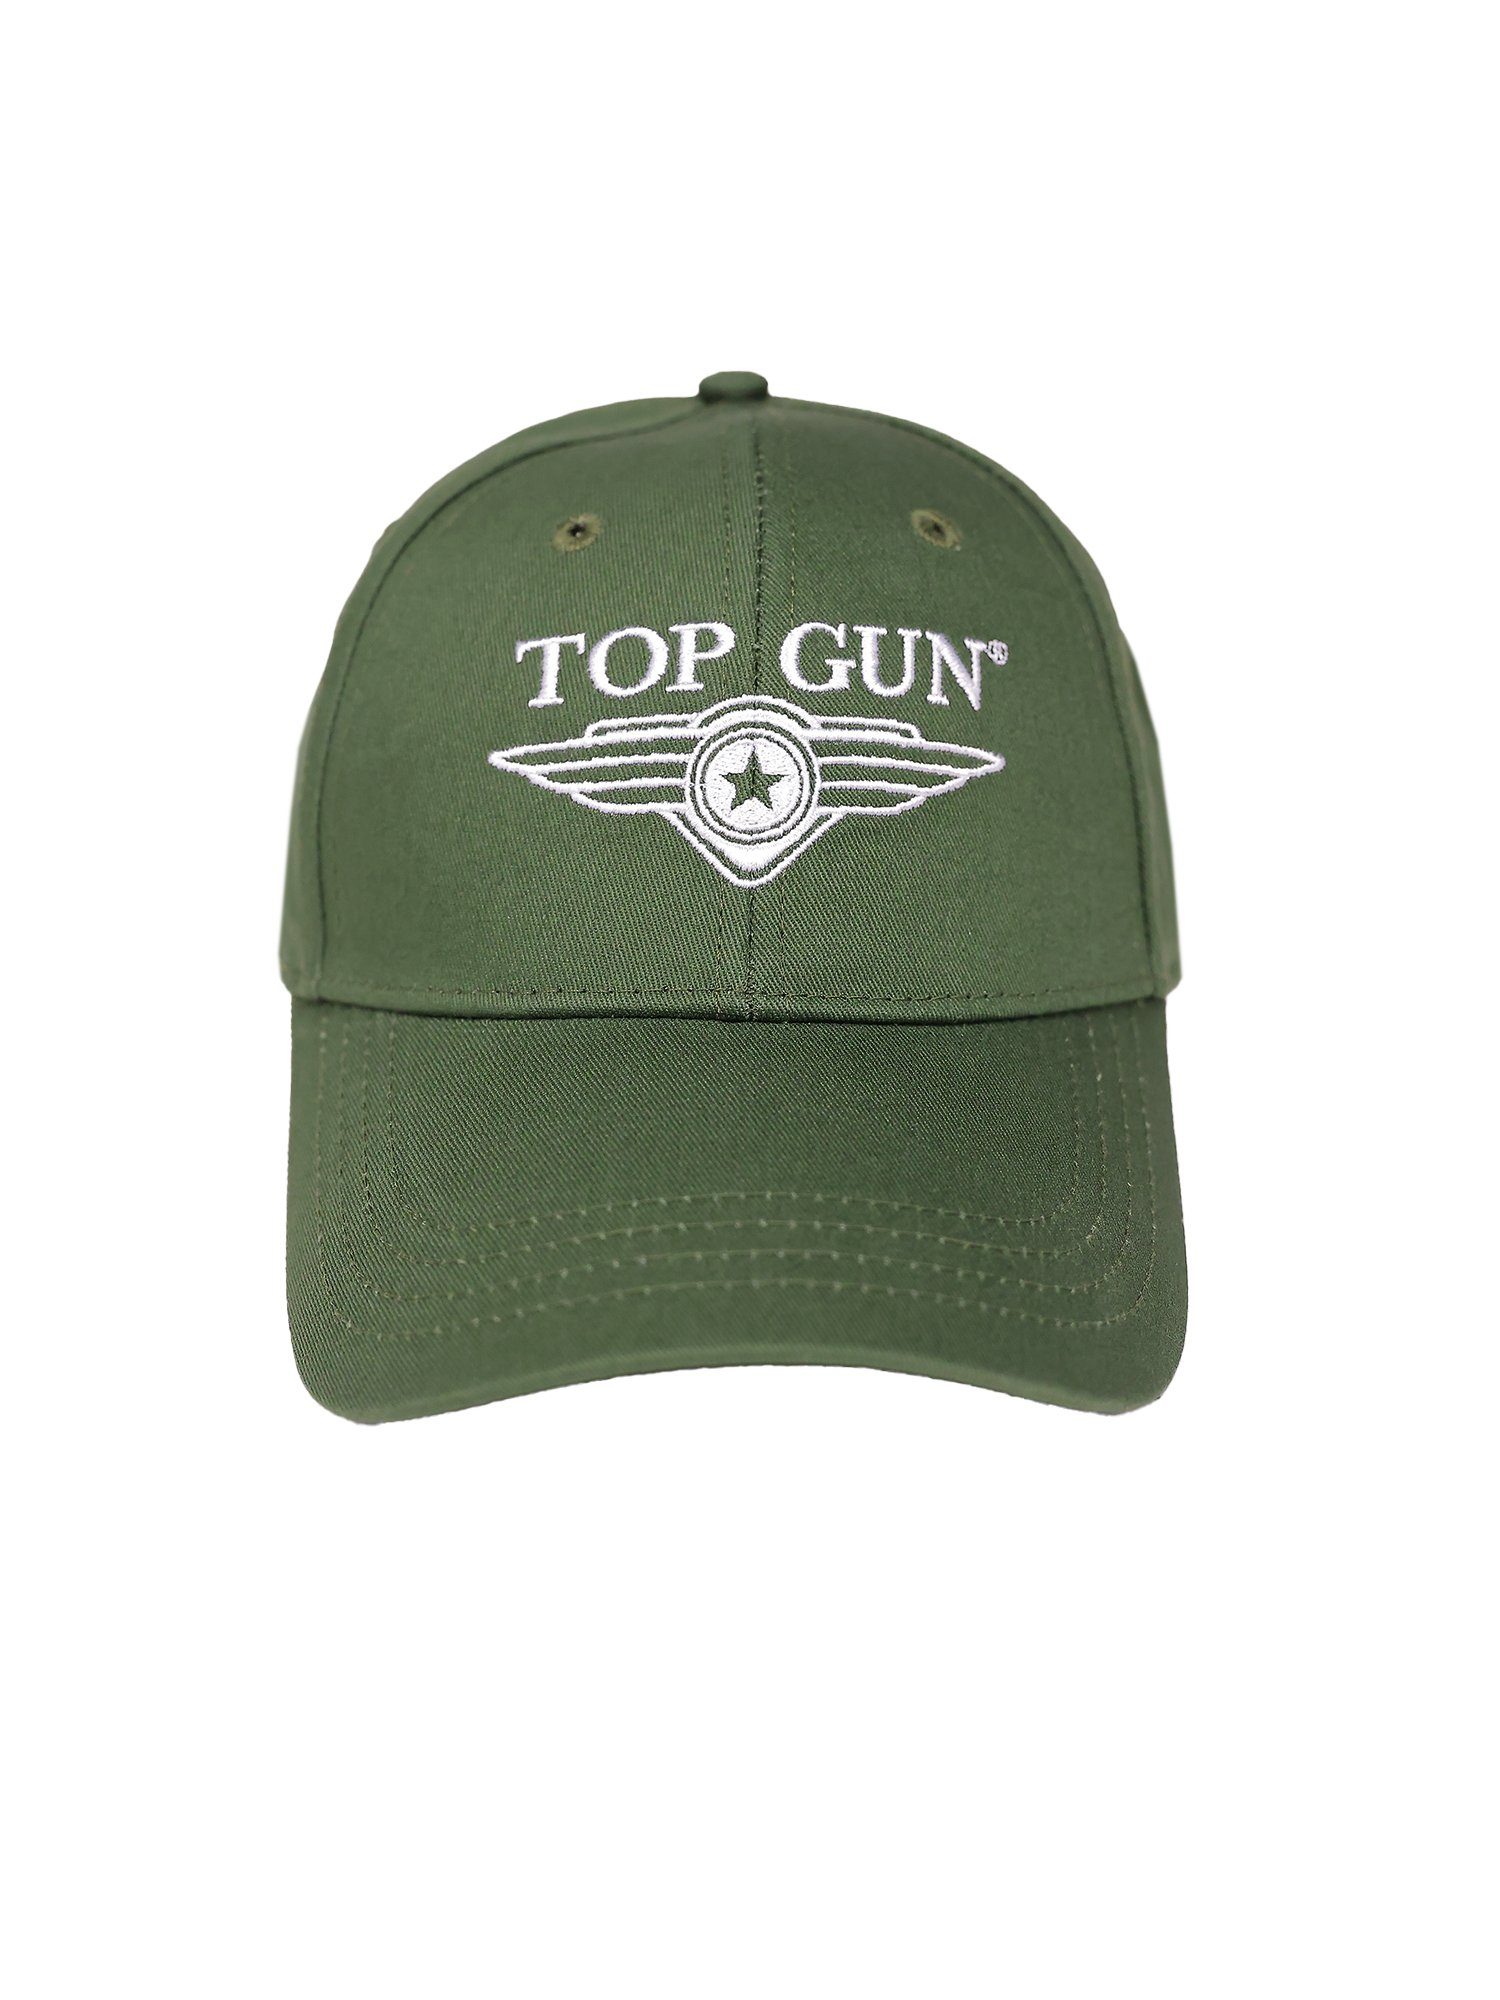 GUN TOP Cap olive Snapback TG22013